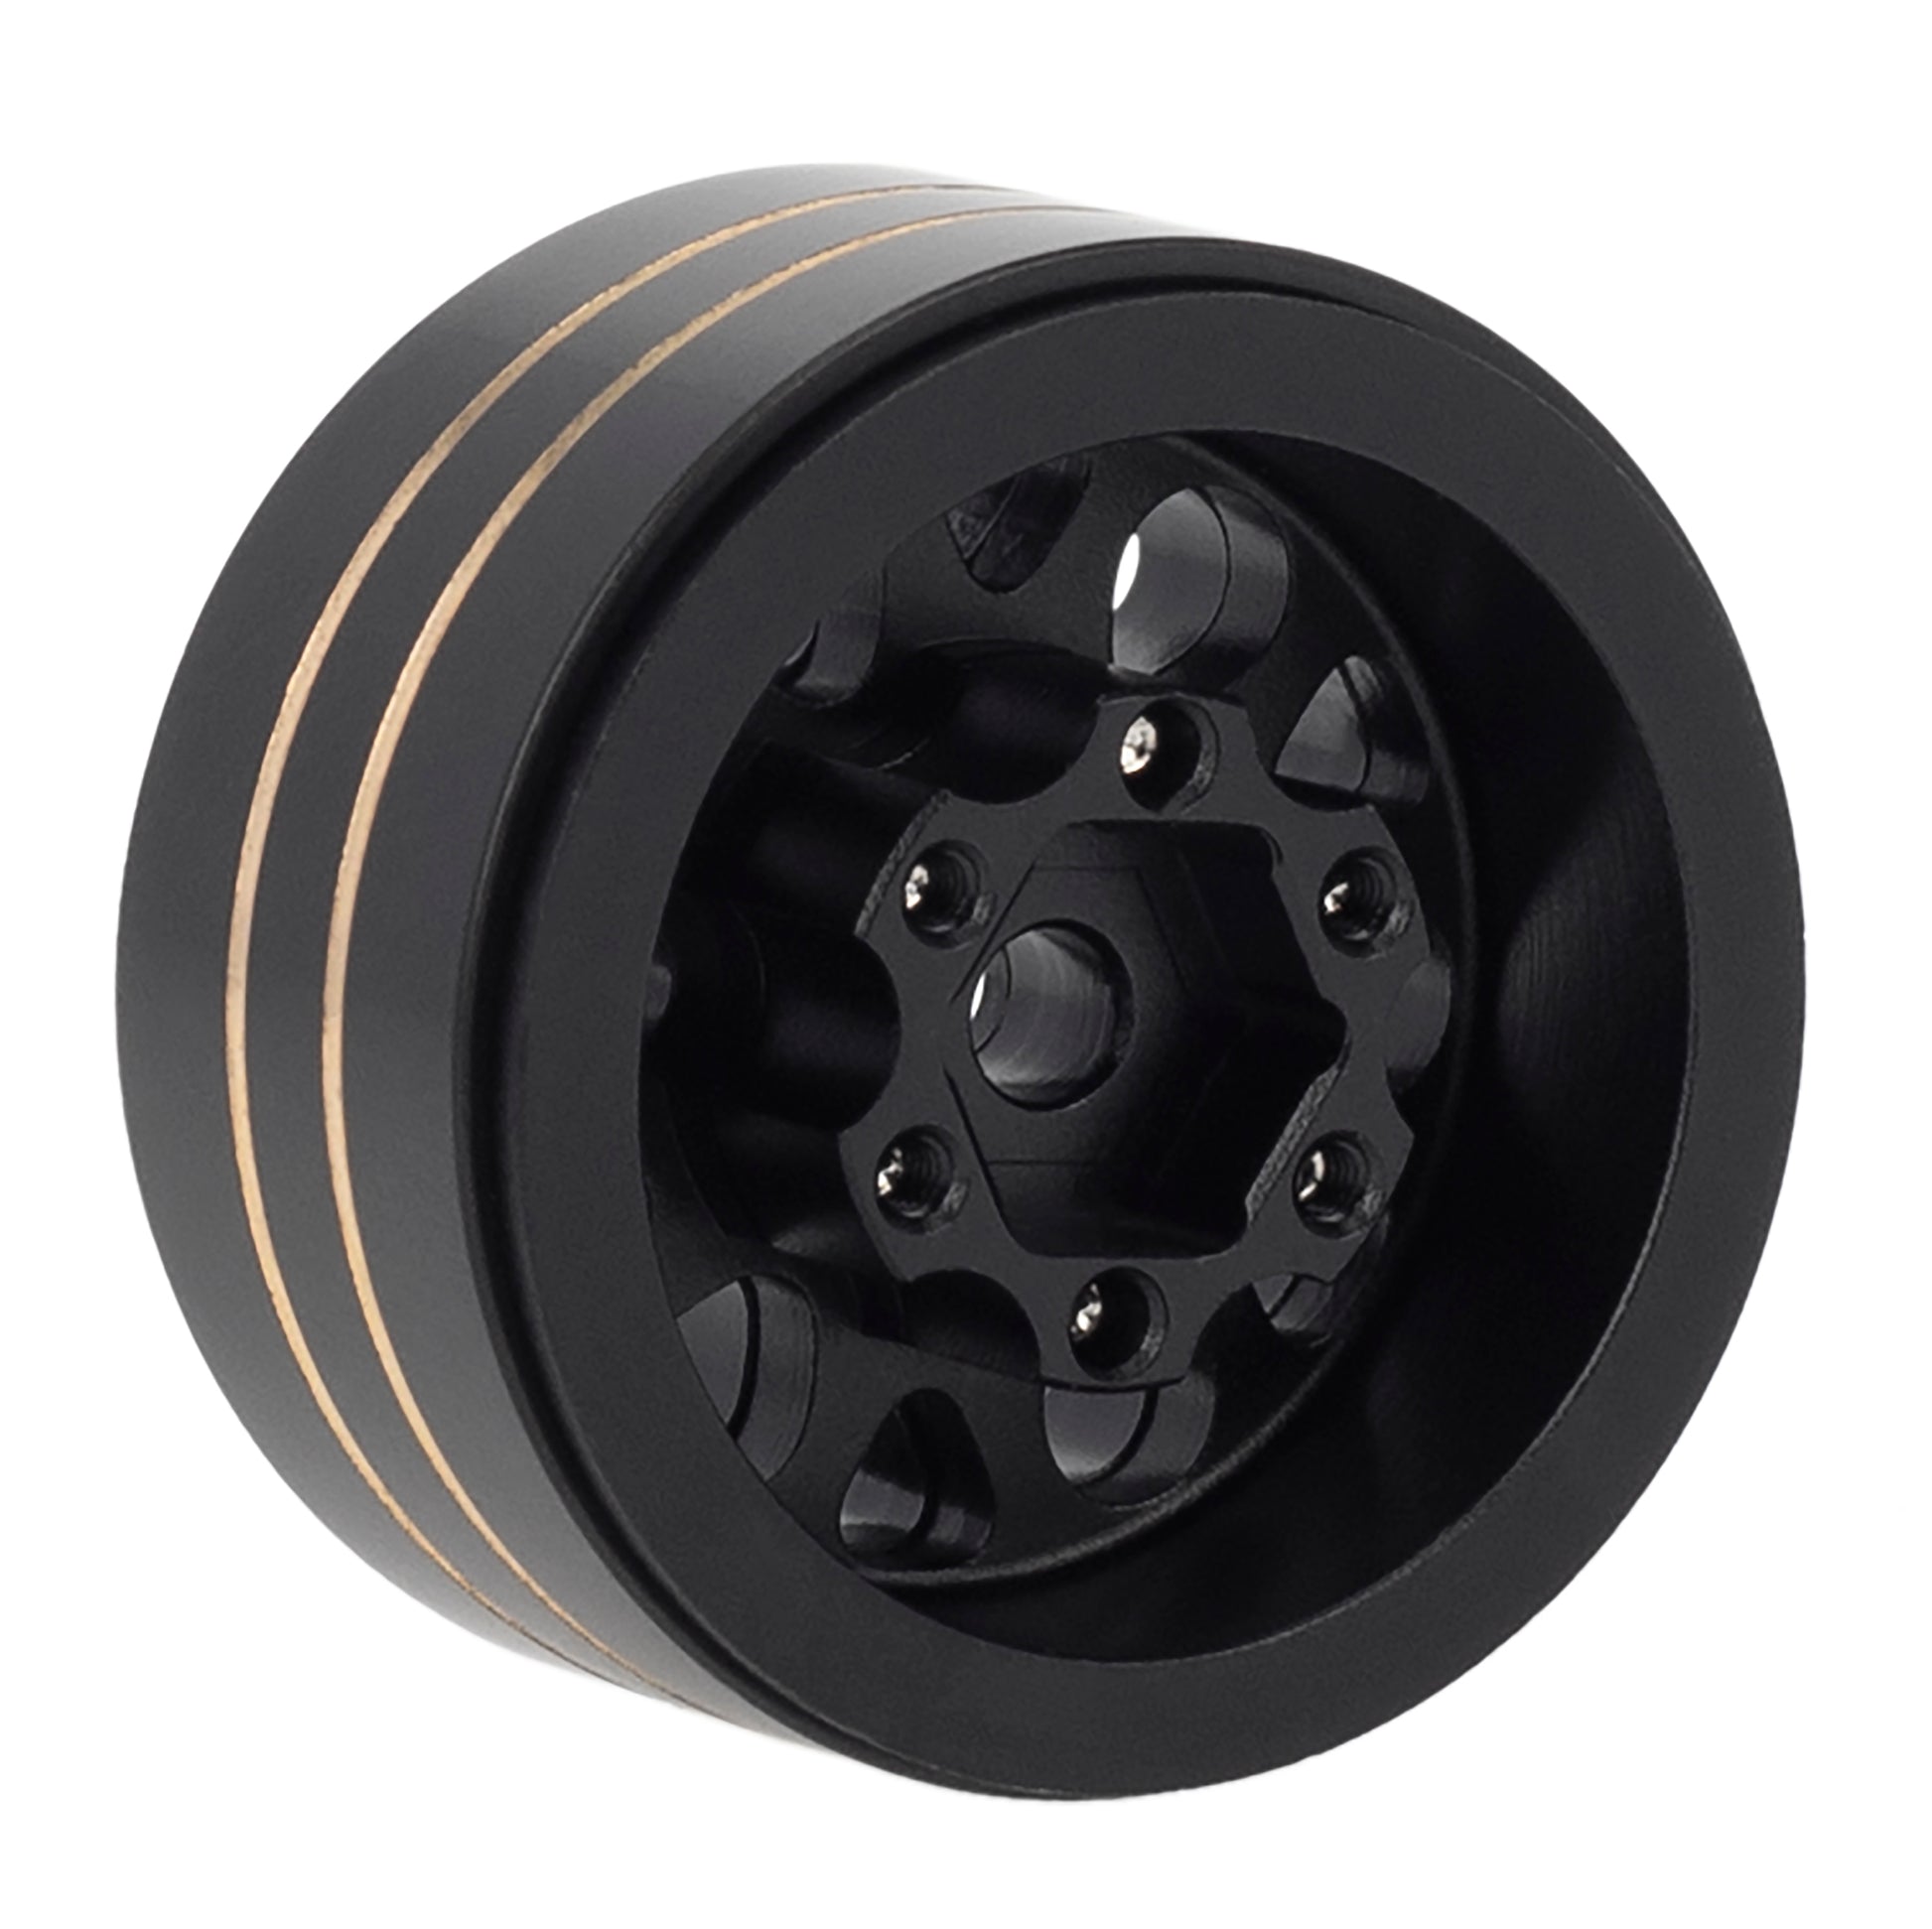 MEUS Racing 1.2-inch Beadlock Wheels Rim,Aluminum Negative Hub,4MM